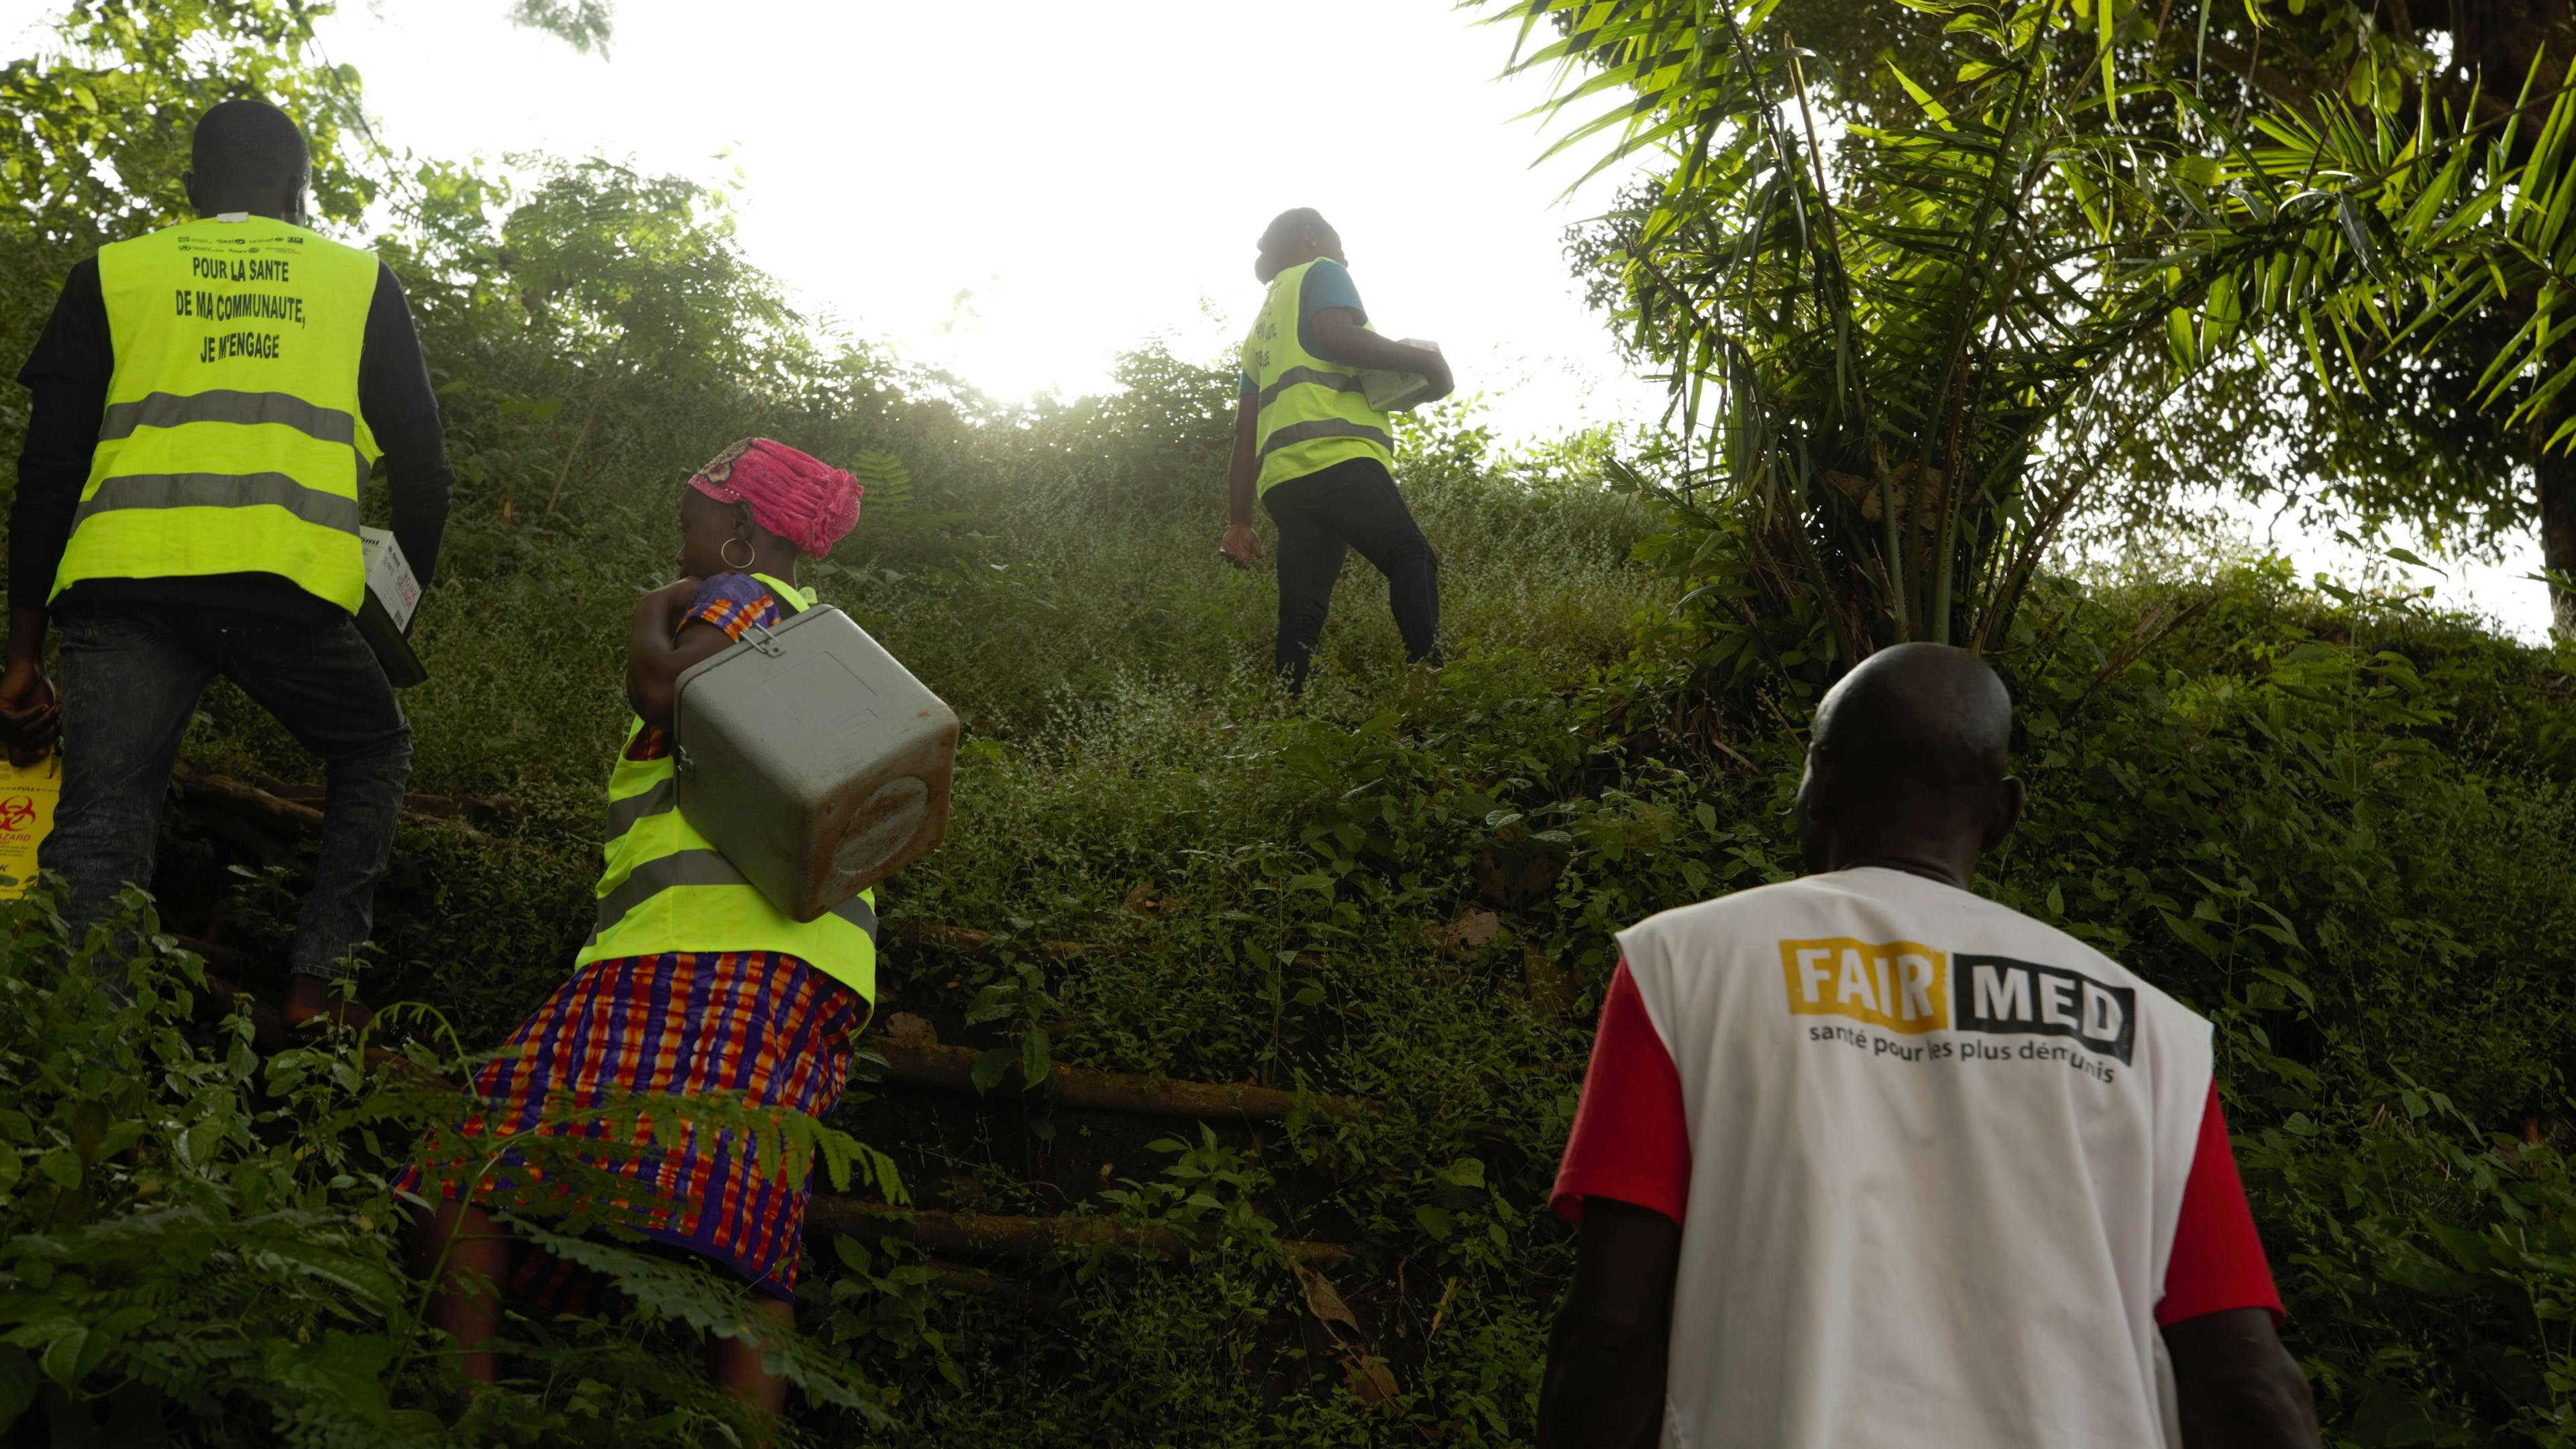 Auf dem Bild sieht man vier FAIRMED-Mitarbeitende, die die Impfstoffe durch den Wald tragen.